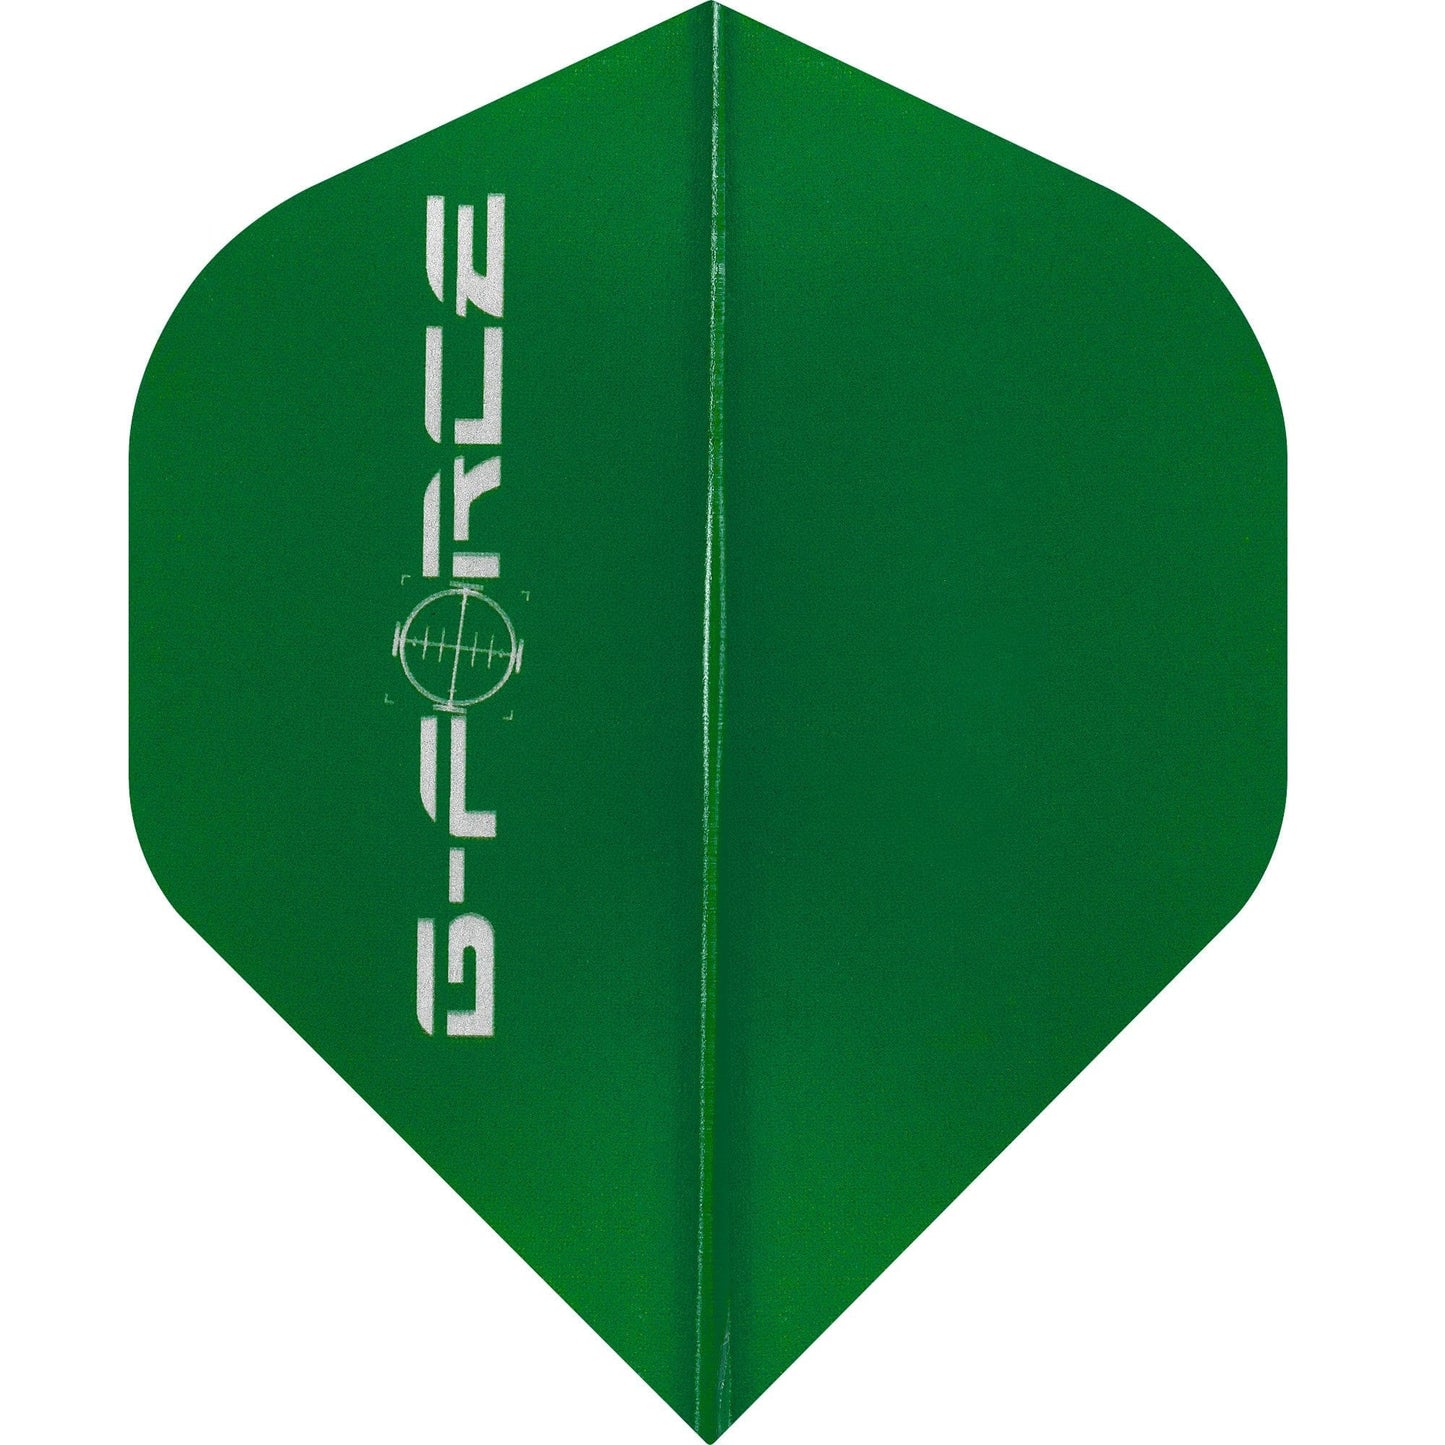 Datadart G-Force Dart Flights - No2 - Std - Transparent Green